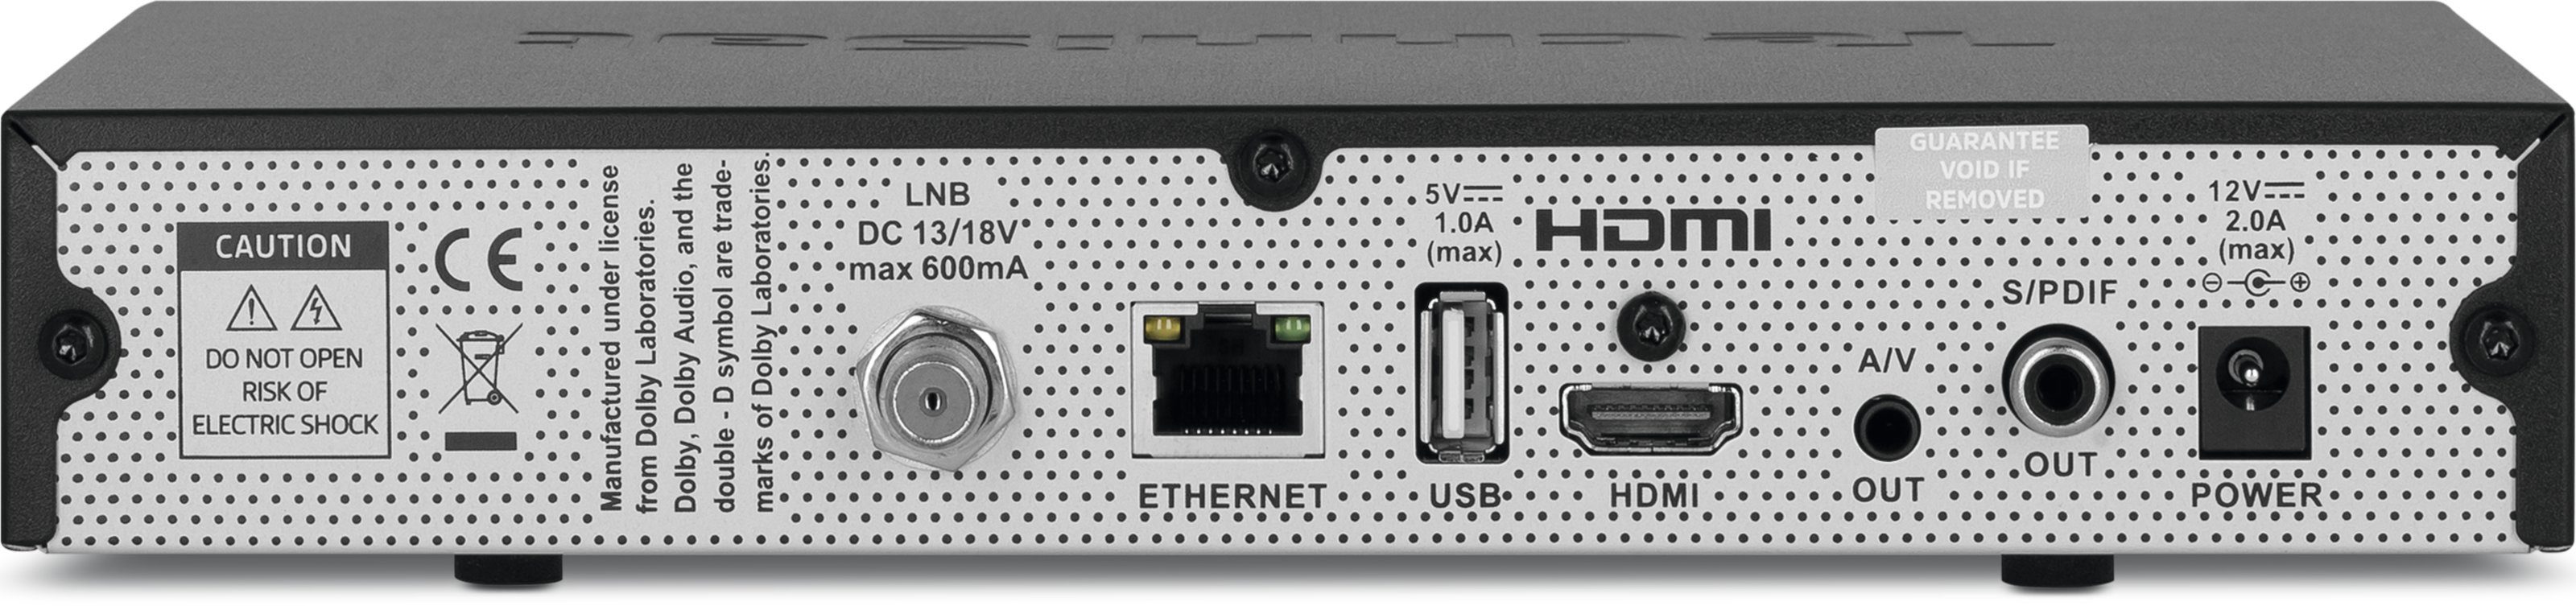 Multimedia-Streaming TechniSat DVRready: Betreibbar SAT-Receiver (LAN Digitale Videorekorderfunktion über TECHNISTAR Heimnetzwerk, zur Aufzeichnung) 12-Volt-Stromnetz, S5 (Ethernet), im